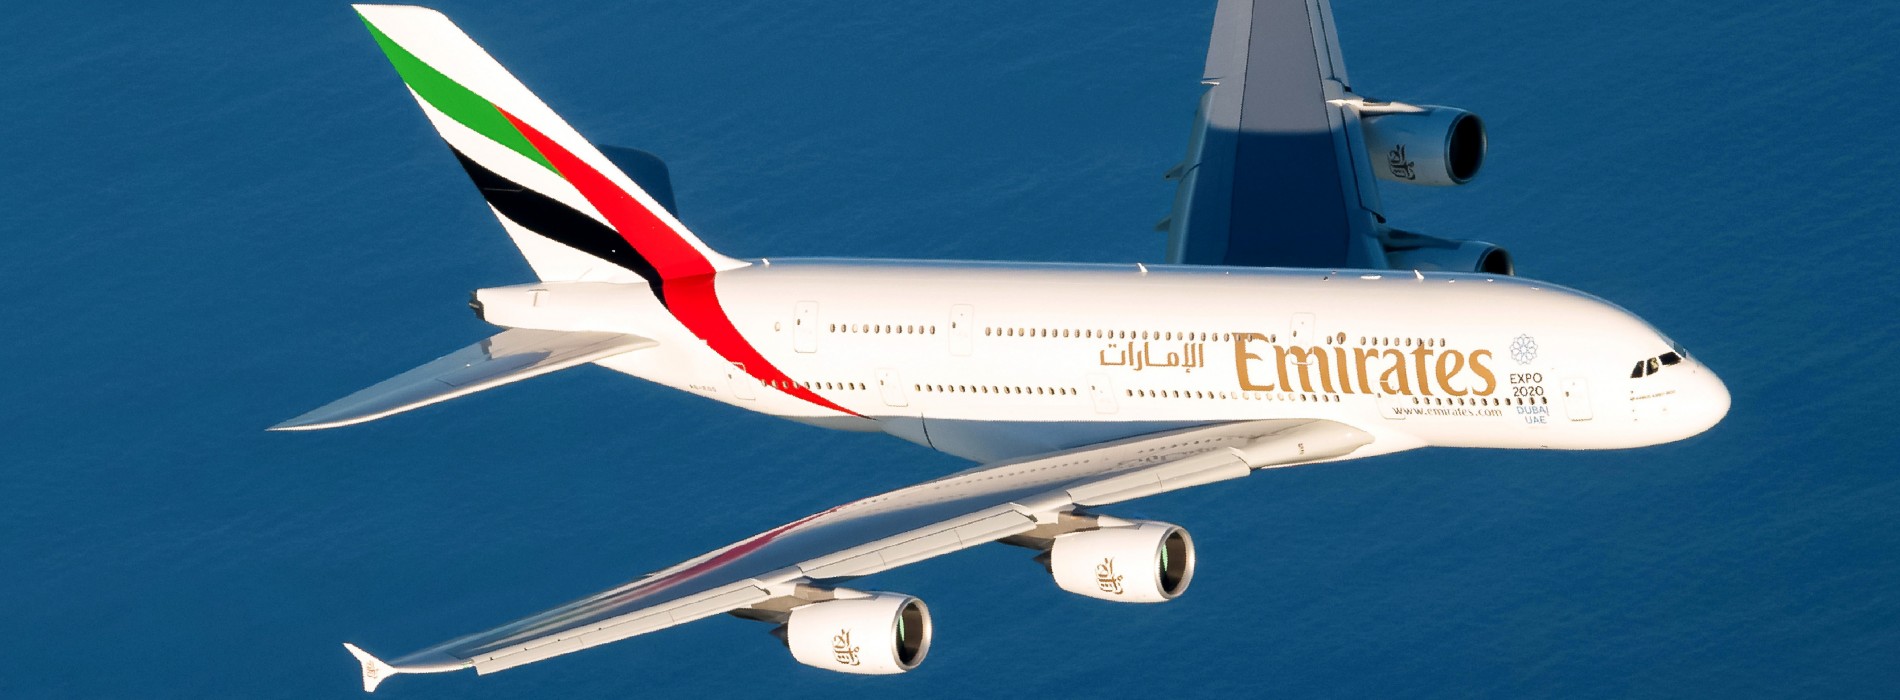 Emirates announces special fares